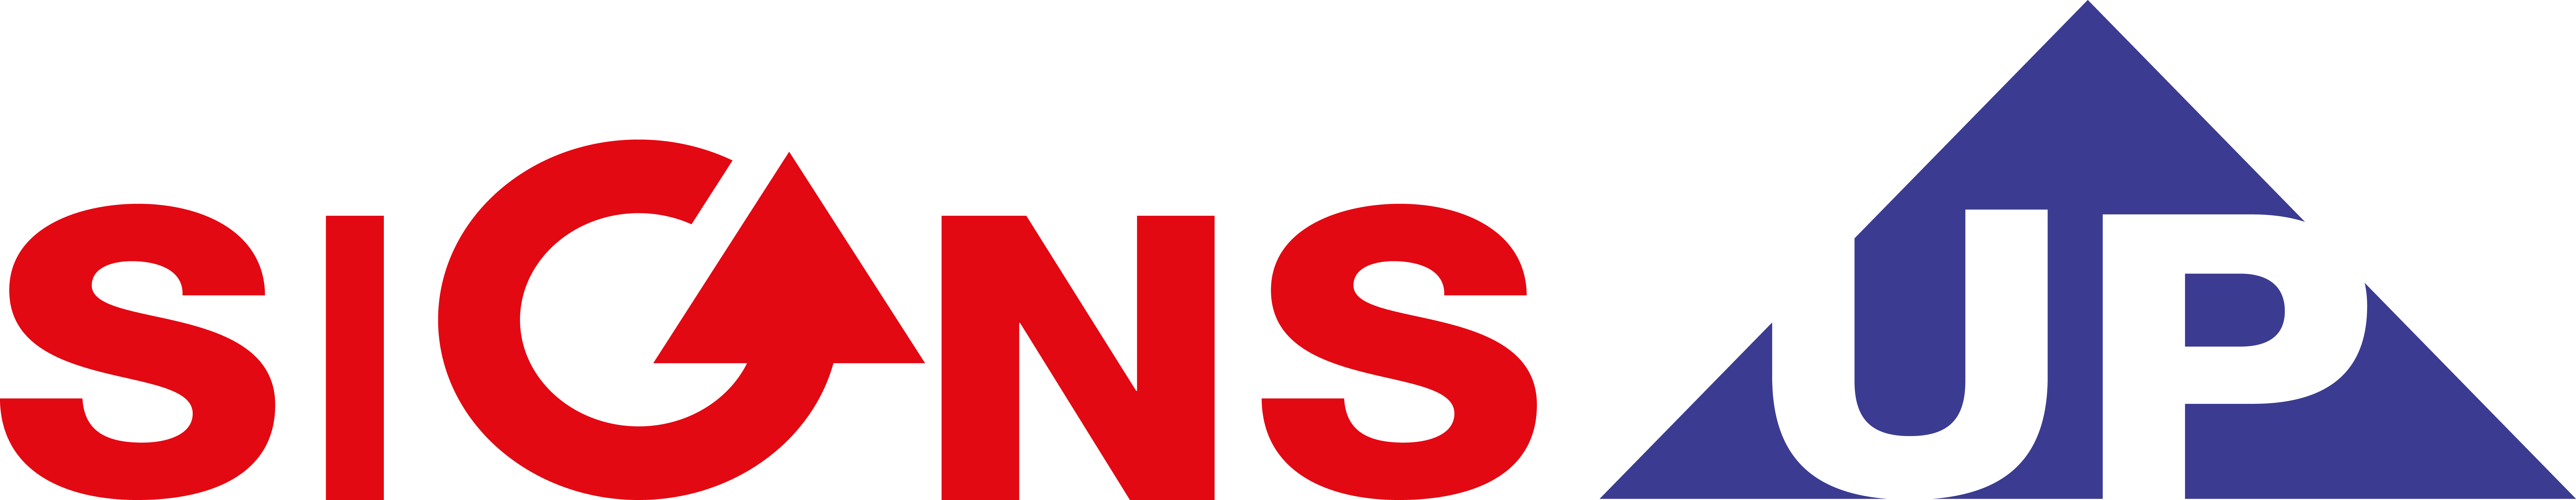 Logo - Signage (8570x1664)